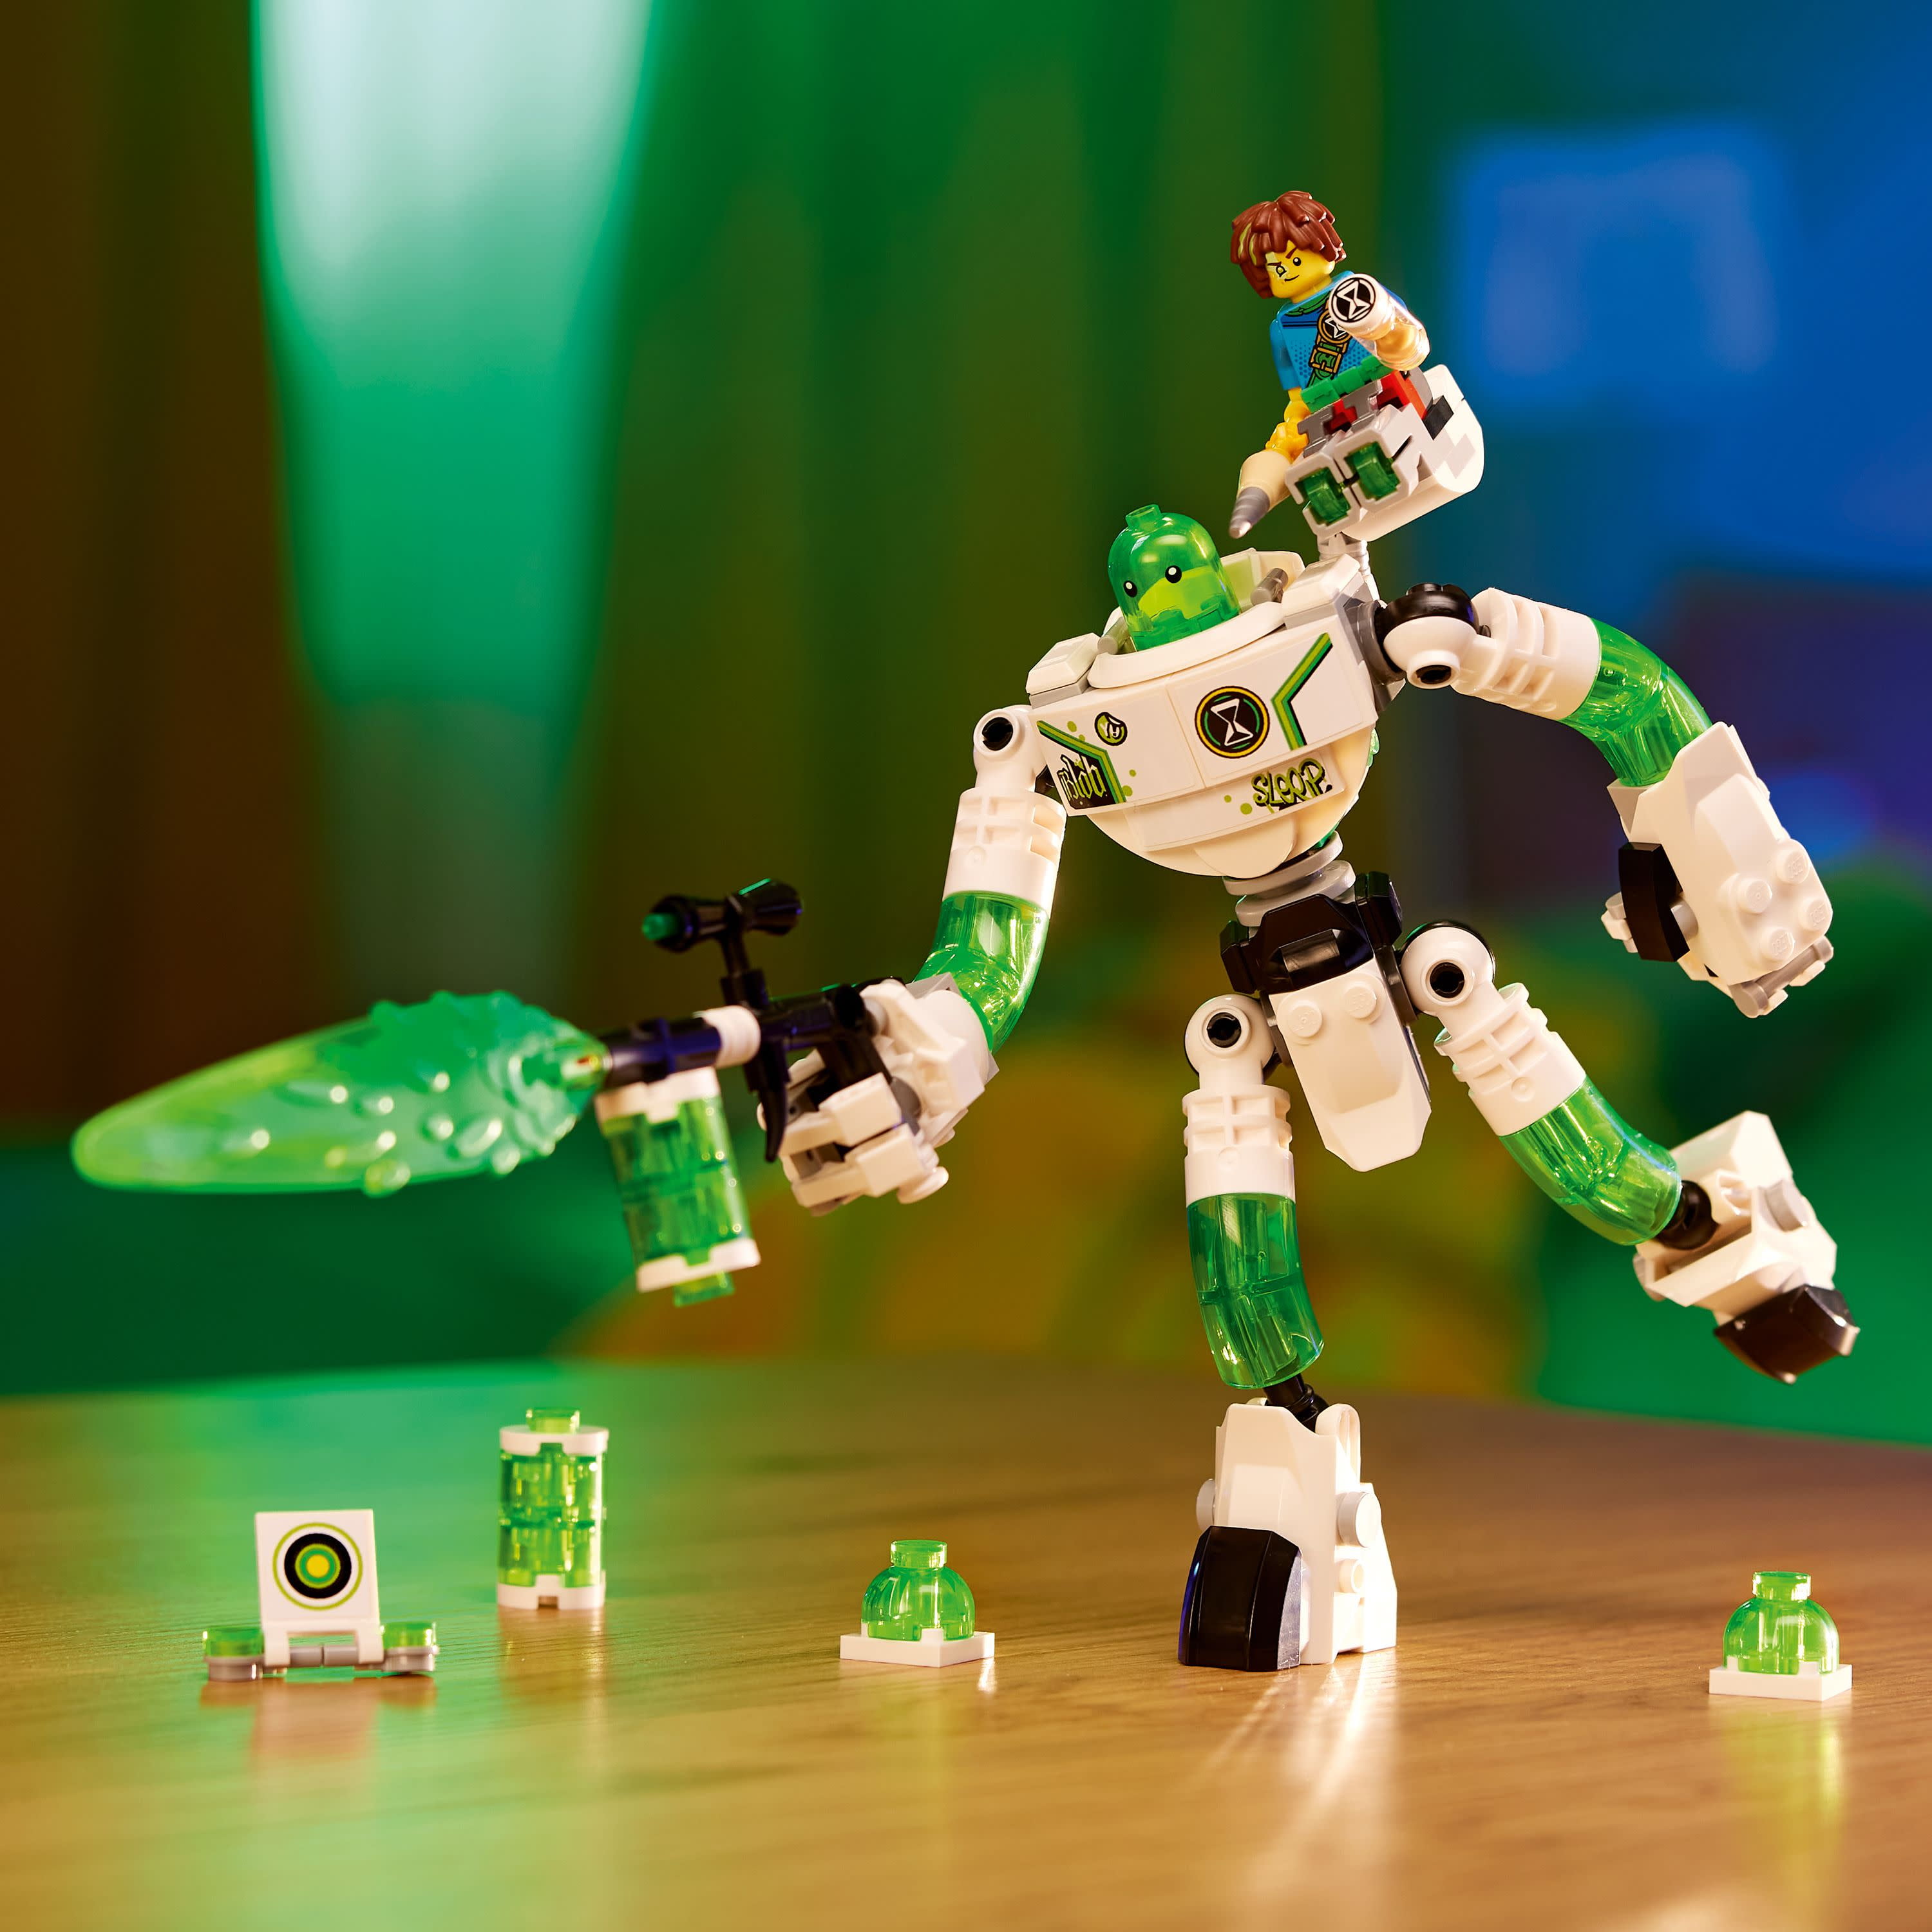 lego robot  Lego creative, Lego robot, Lego bionicle